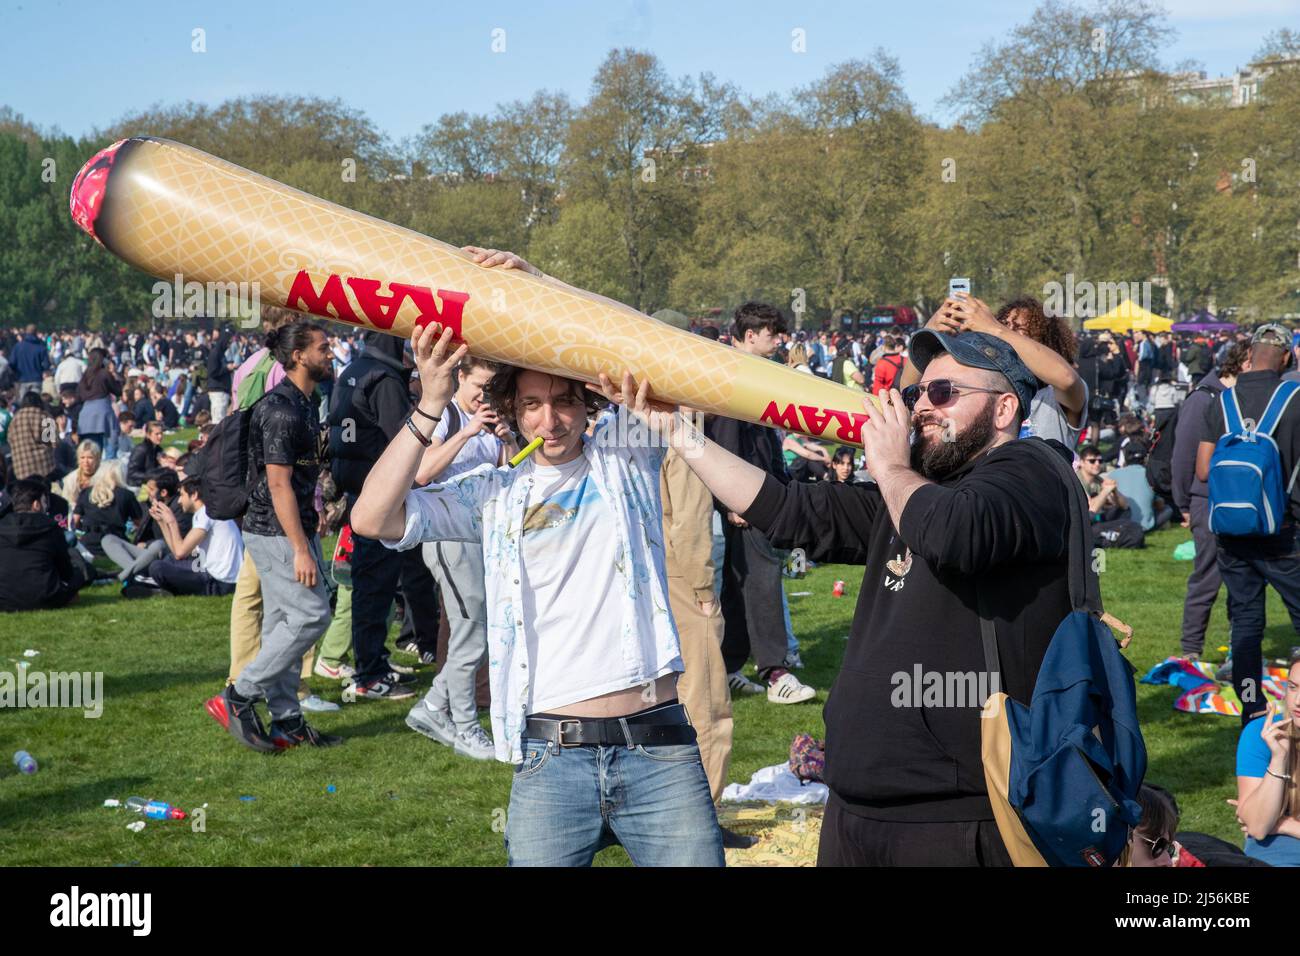 LONDRES, AVRIL 20 2022. Des milliers de personnes se rassemblent à Hyde Park à Londres pour célébrer 4/20, autrement connu sous le nom de World Weed Day, : cet événement est observé chaque année dans le monde entier par des fumeurs de cannabis pour protester contre la légalisation de la marijuana. Banque D'Images